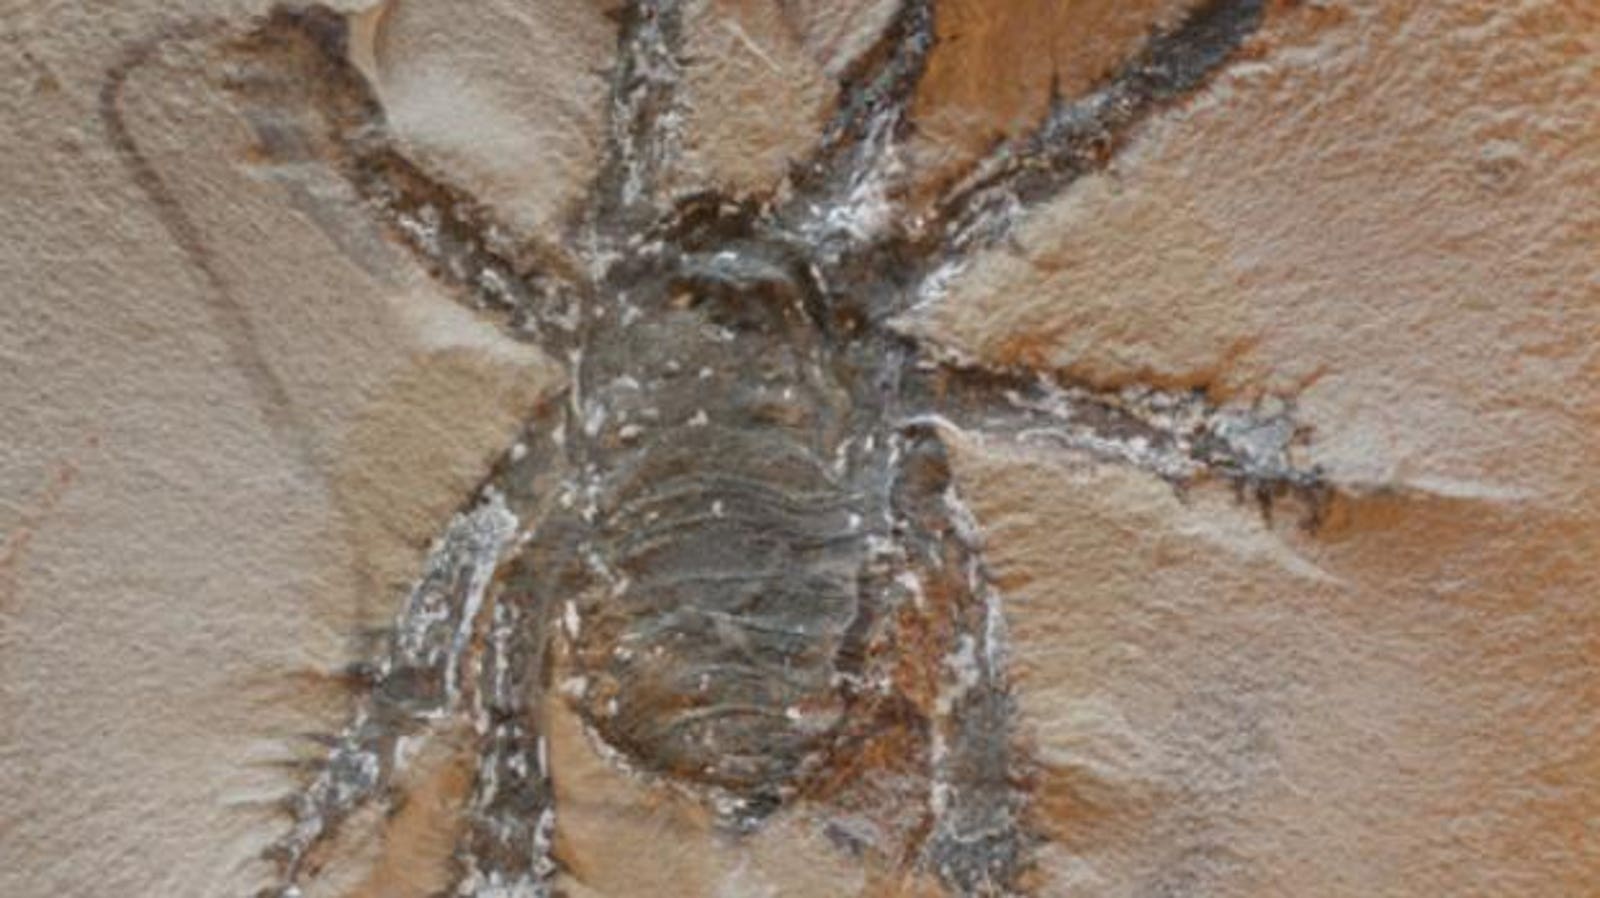 Conozca a la "araña espinosa" de 300 millones de años encontrada en uno de los mejores sitios de caza de fósiles de Estados Unidos.